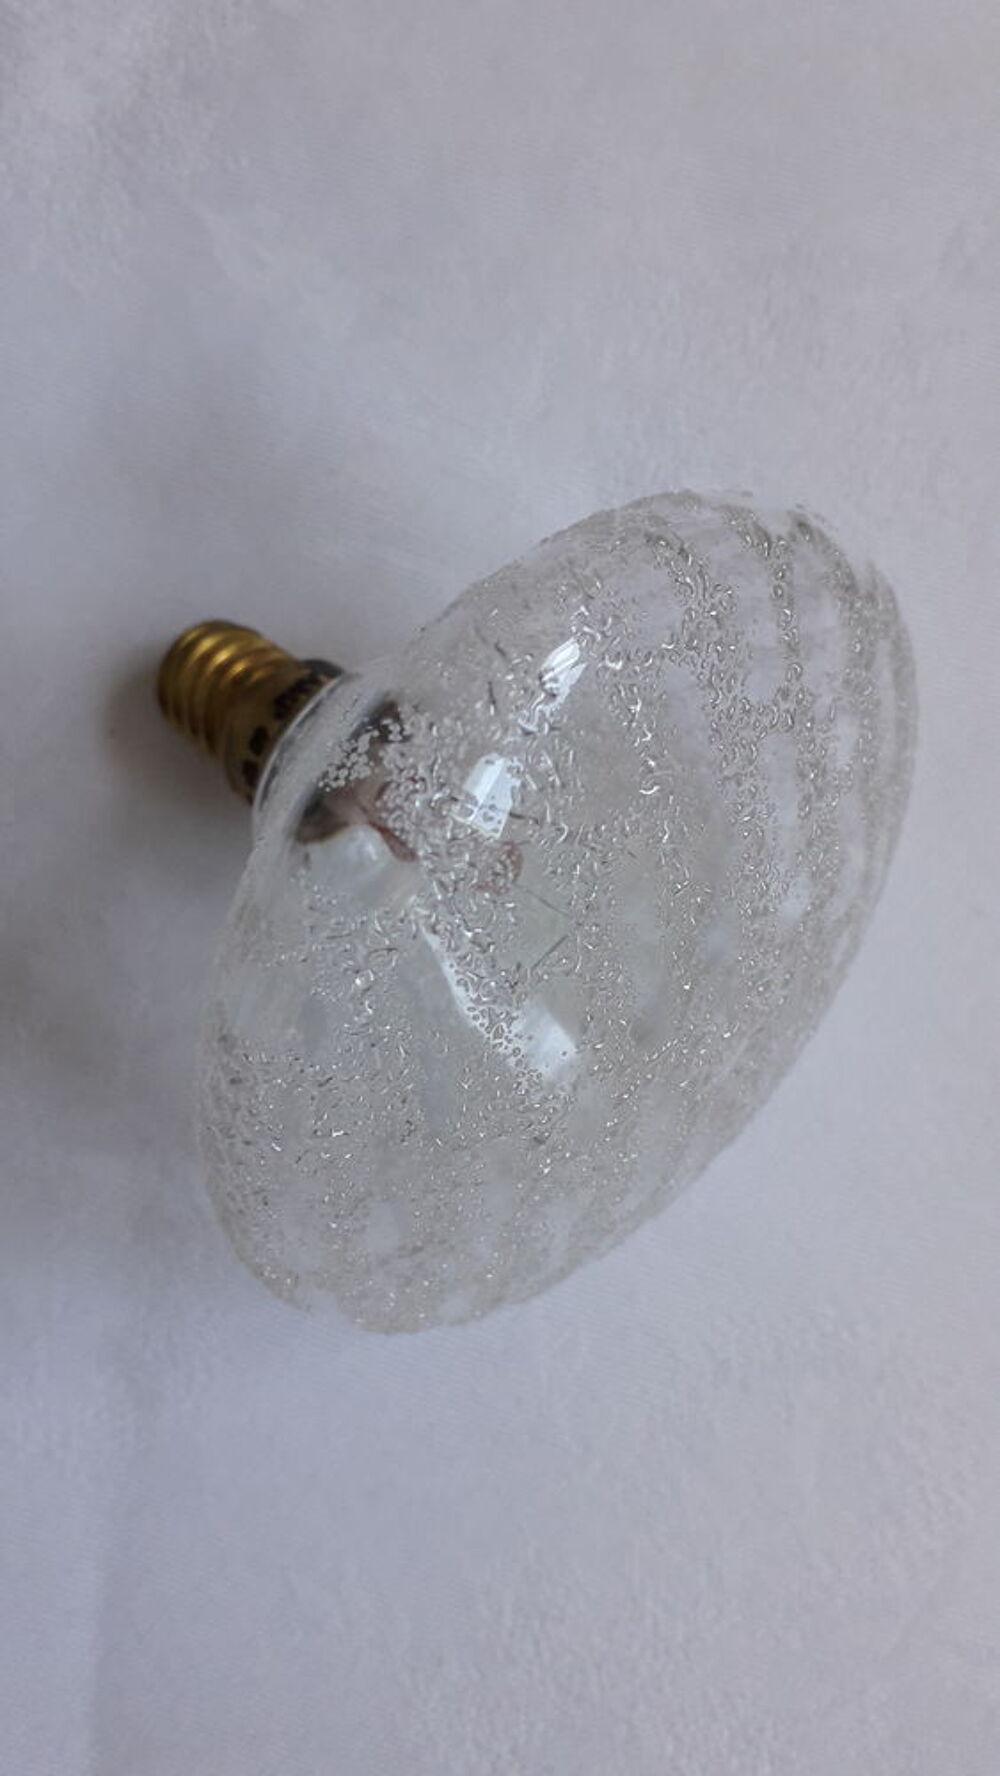 Ampoules 40W forme champignon
Bricolage